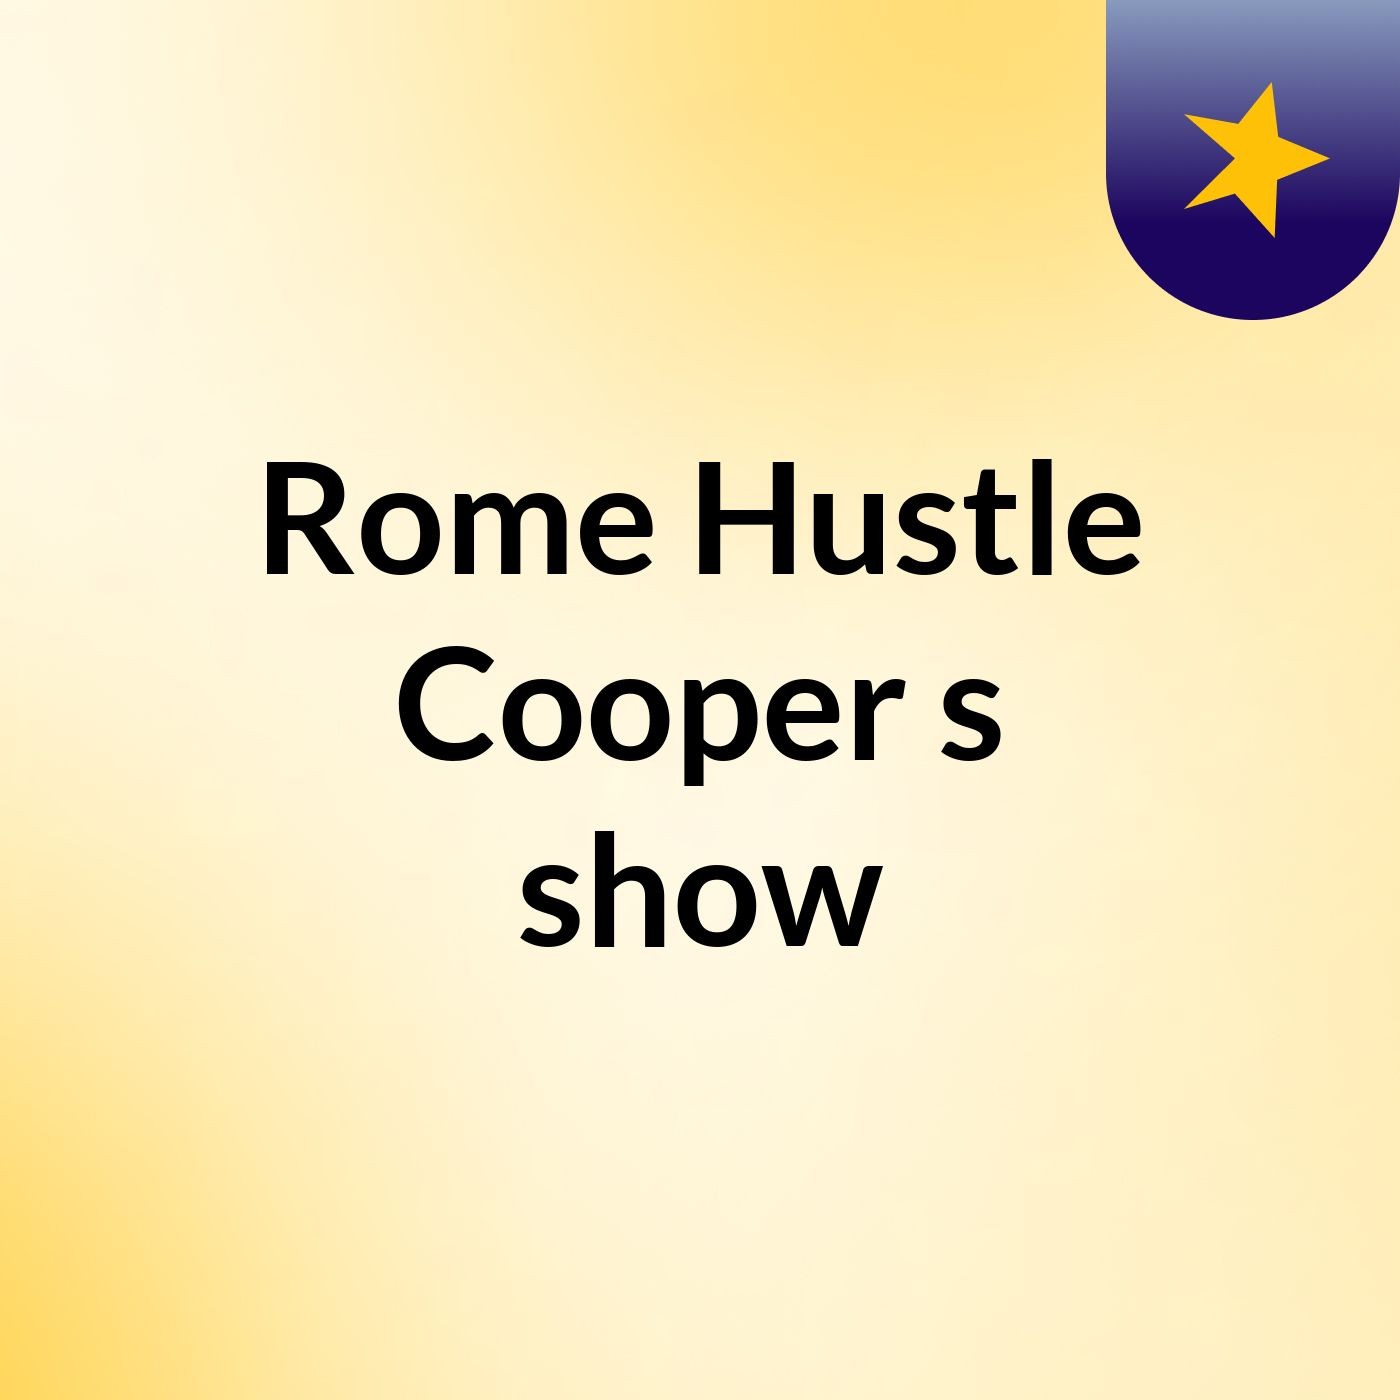 Rome Hustle Cooper's show